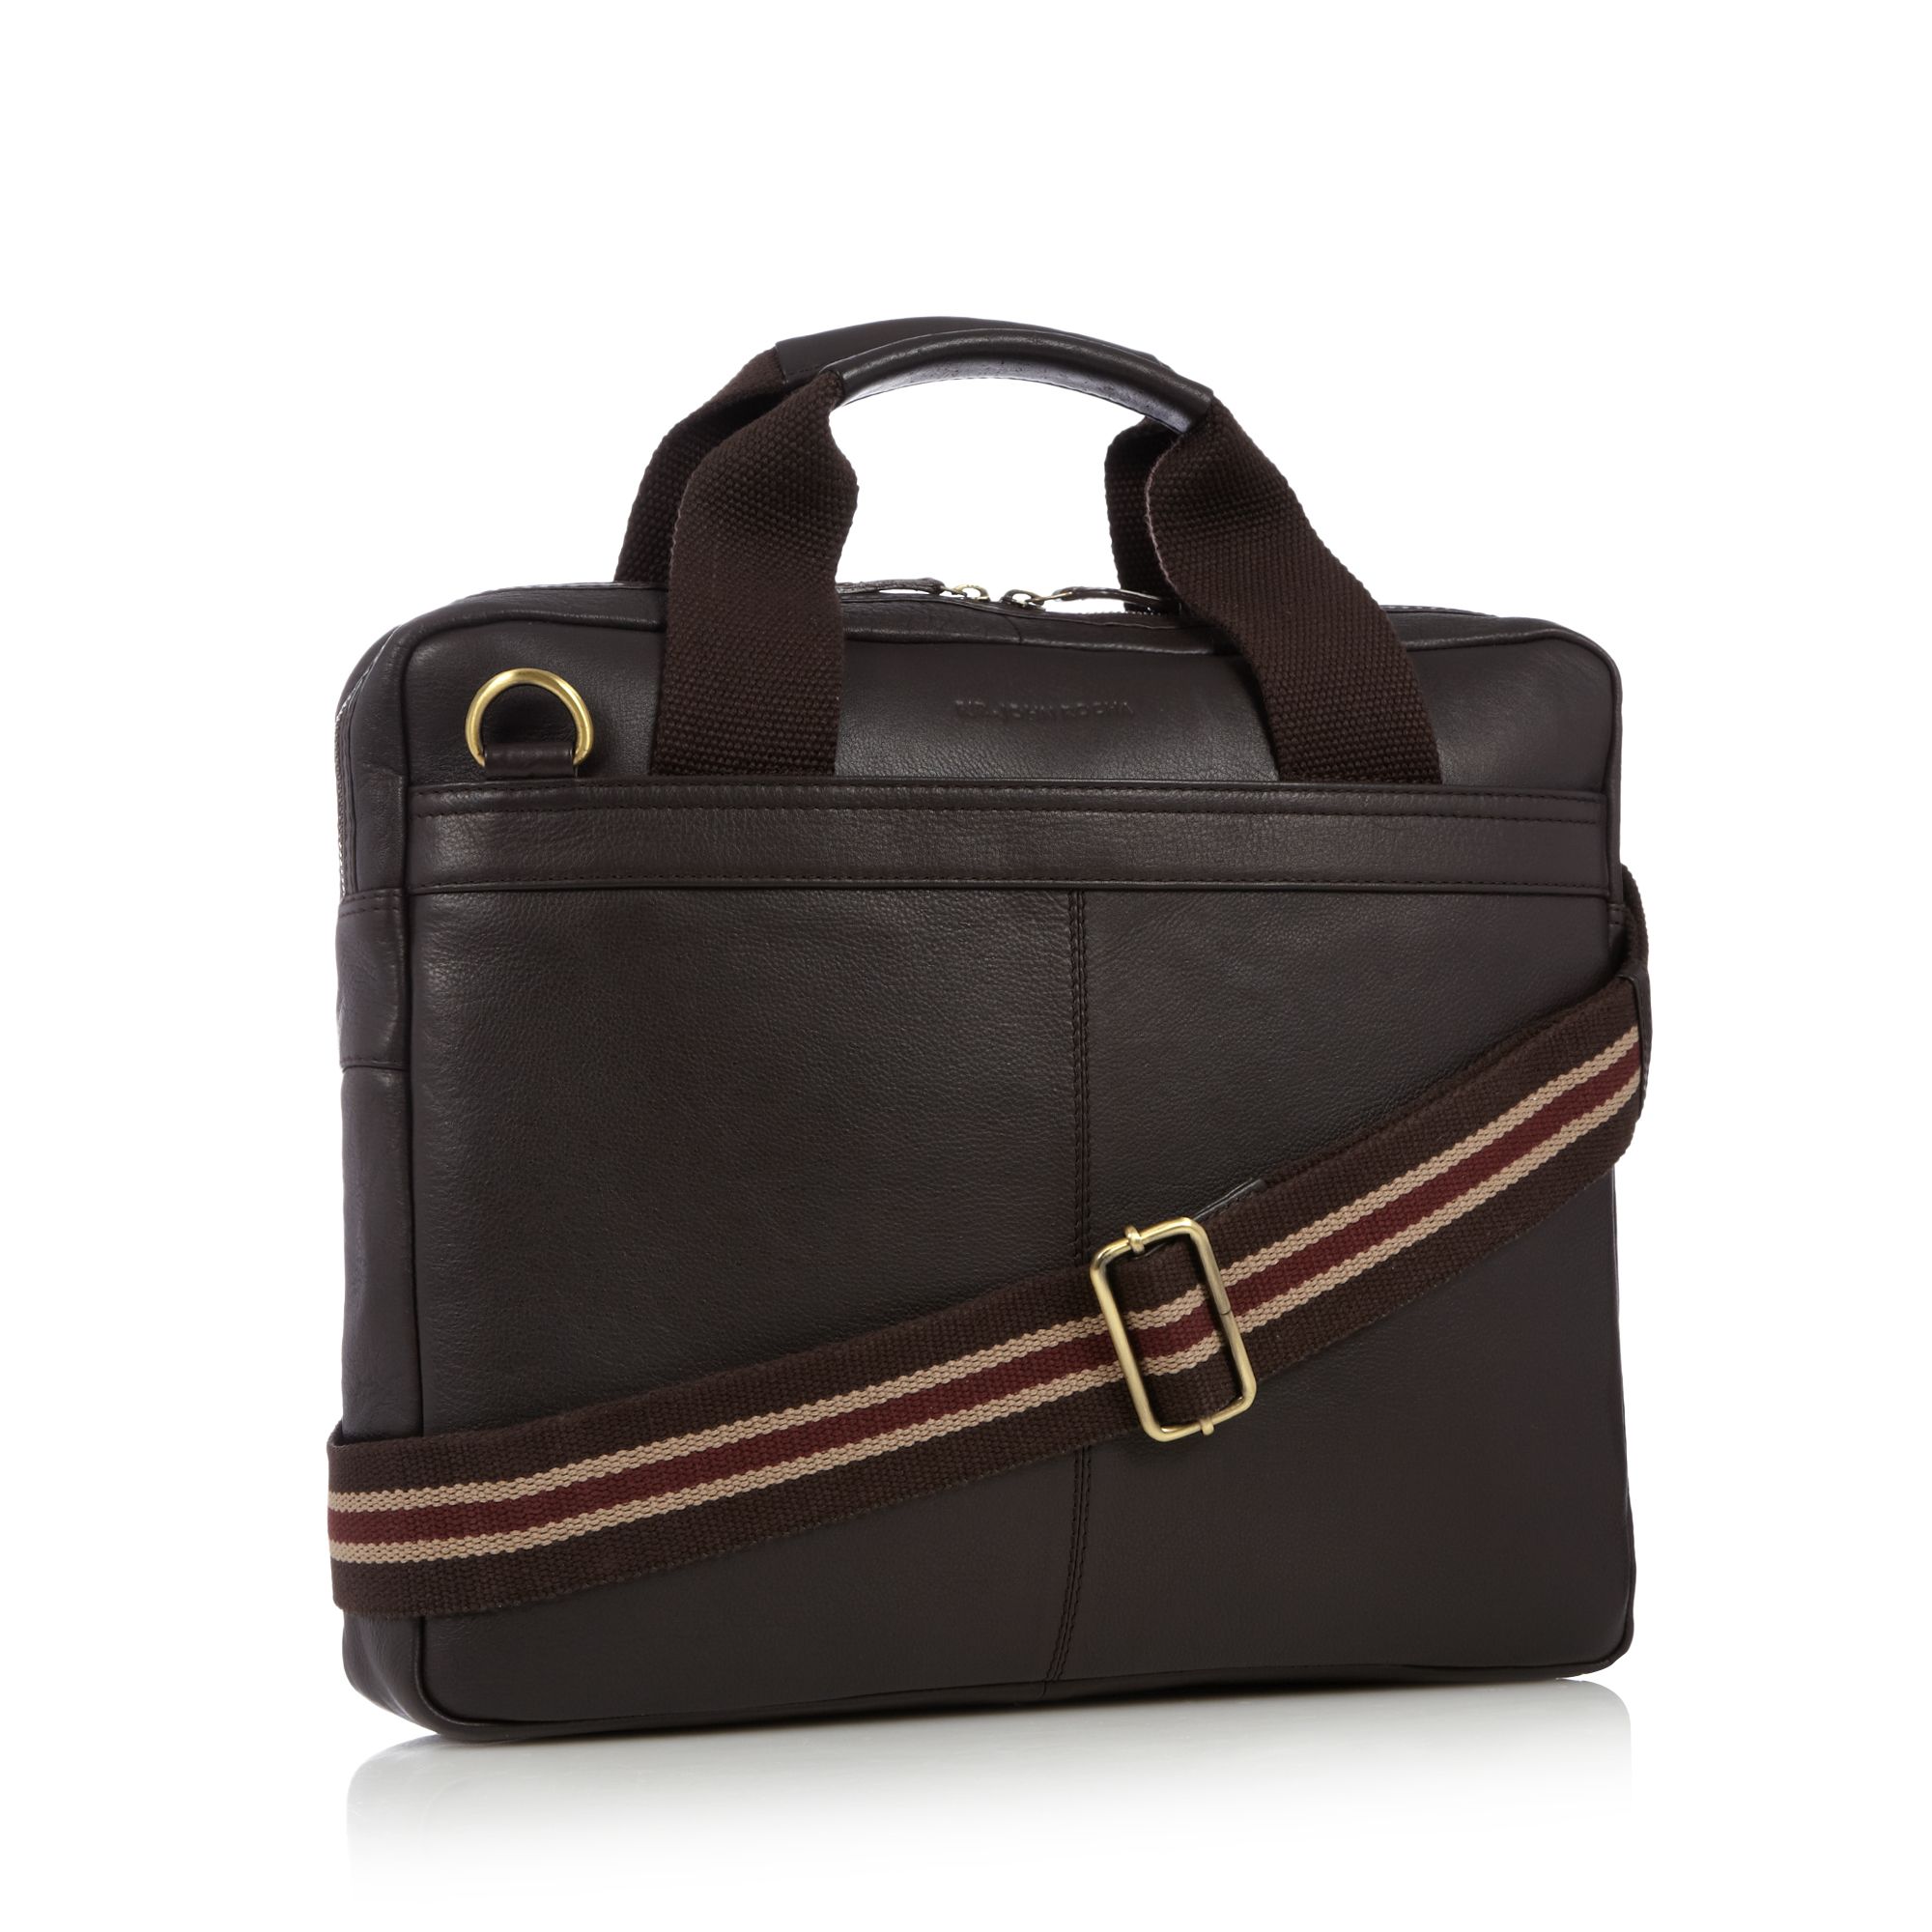 Rjr.John Rocha Mens Designer Brown Leather Work Bag From Debenhams | eBay